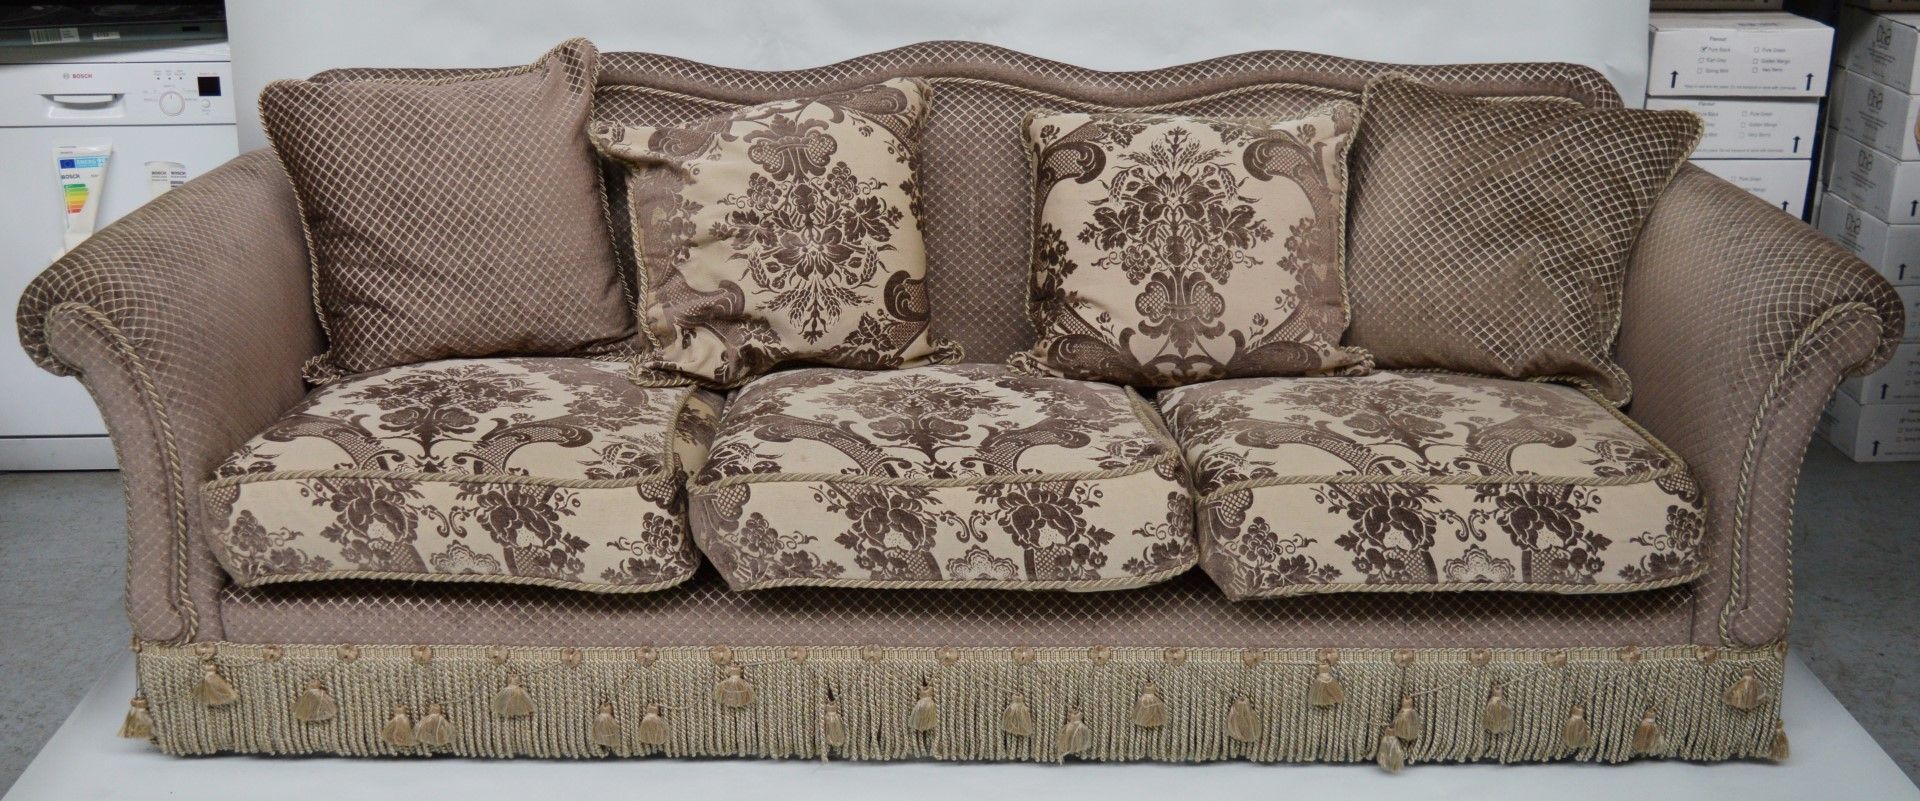 1 x Parker & Farr Abigail Special Sofa - Dimensions W240 x H87 x D89cm - Ref: 4081161 - CL007 - - Image 13 of 20